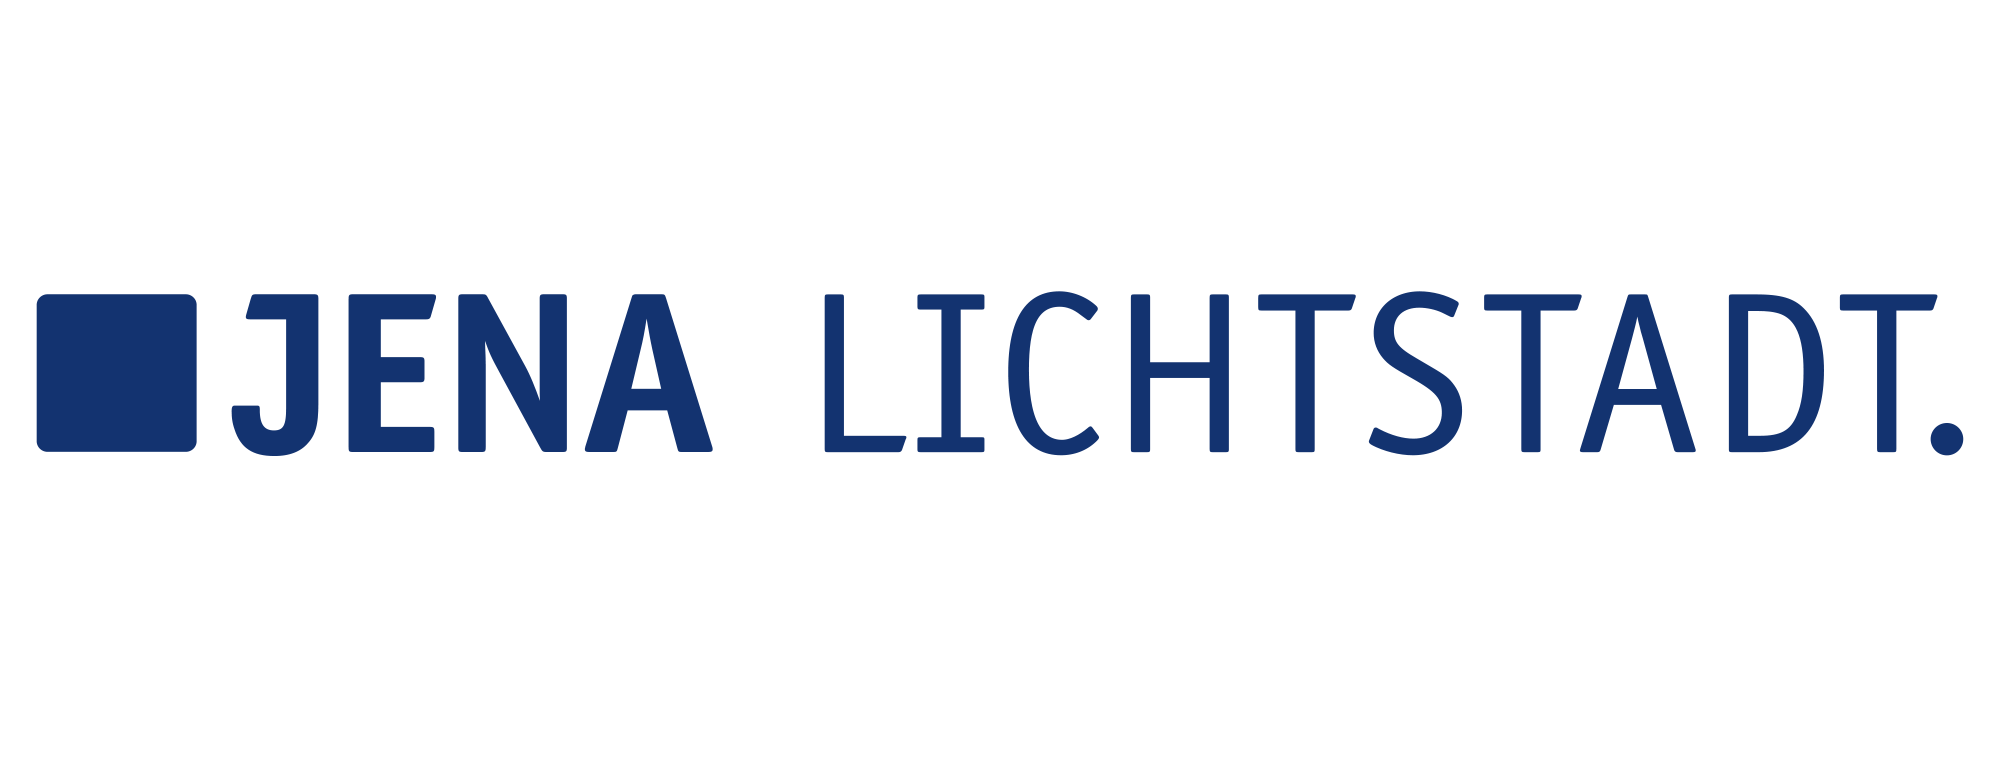 Jena Lichtstadt-Label, blaube Schirft mit einem blauen Quadrat davor